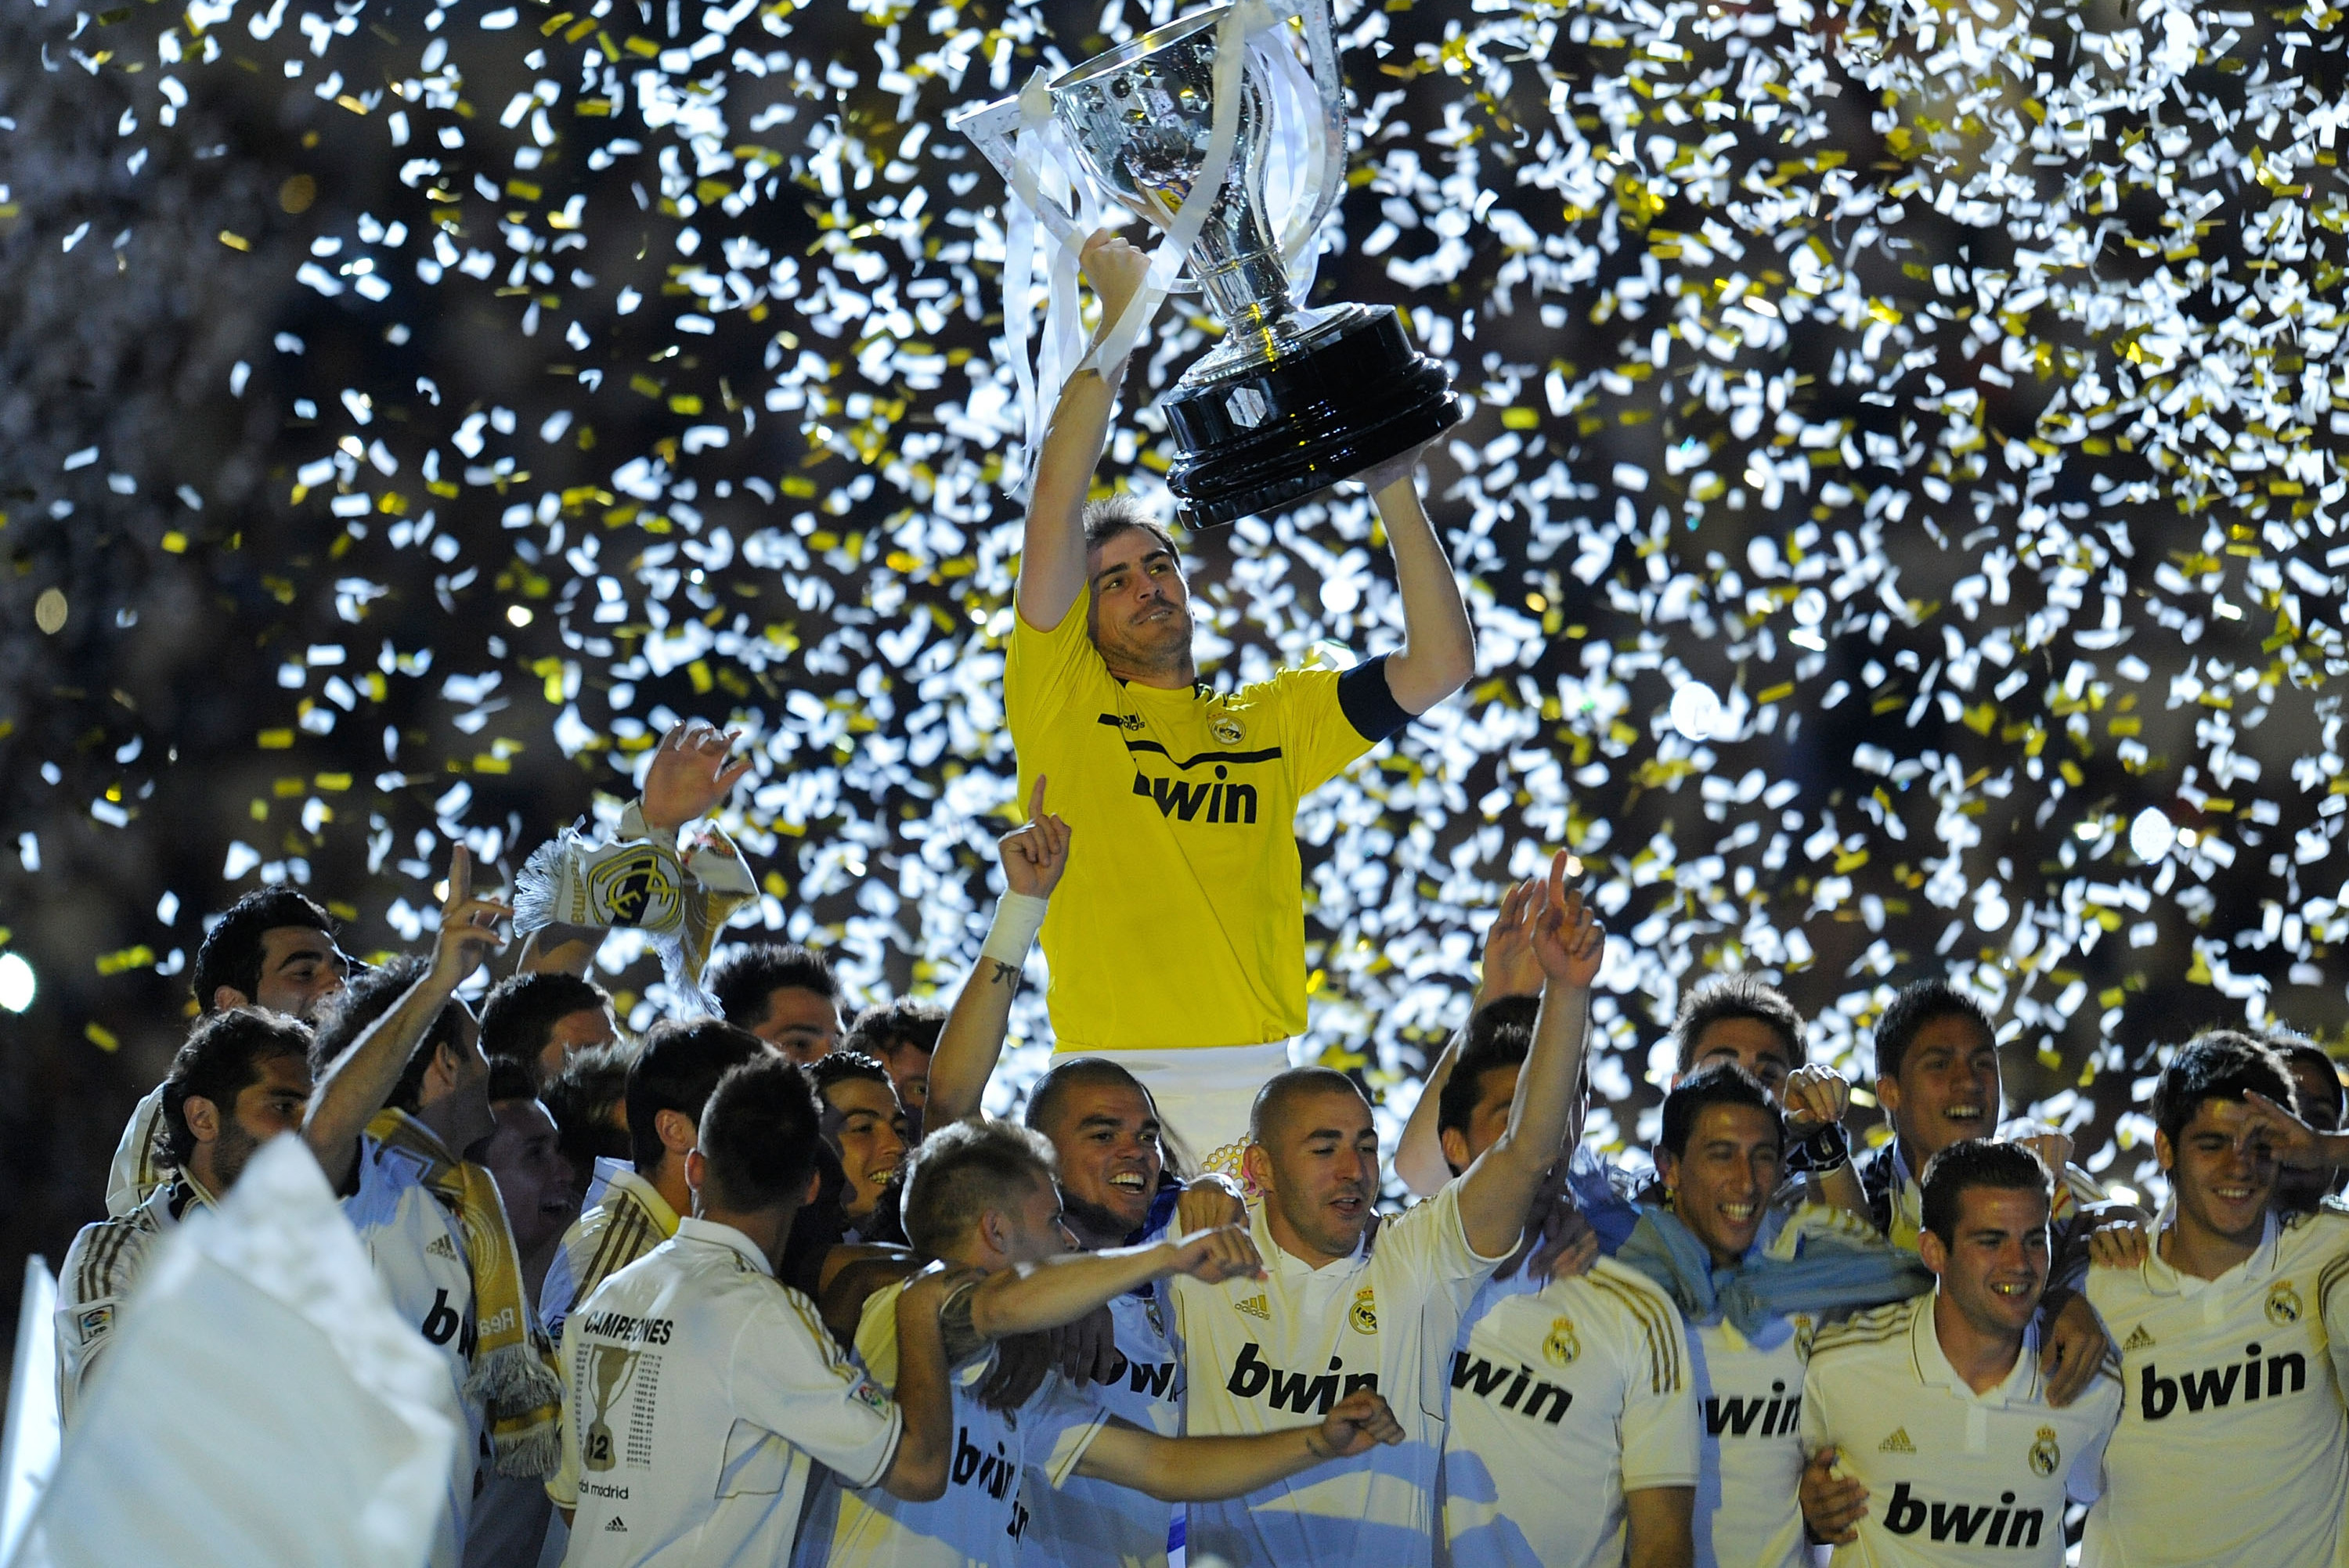 Real Madrid - La Liga: Real Madrid's 2011/12 history makers: Peak